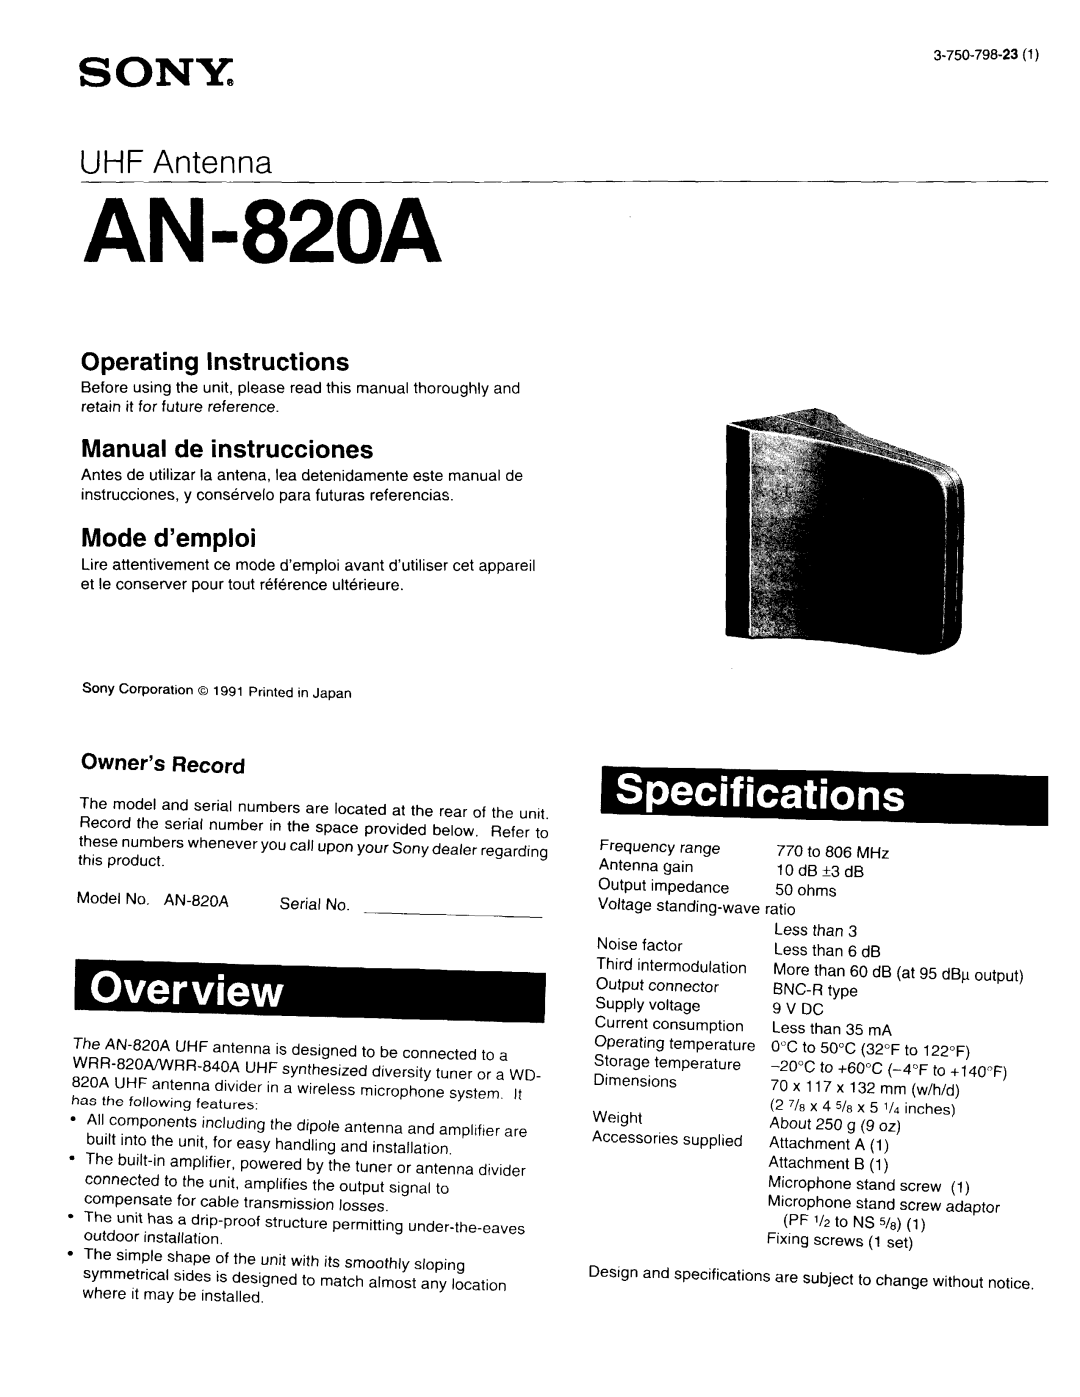 Sony AN-820A manual 